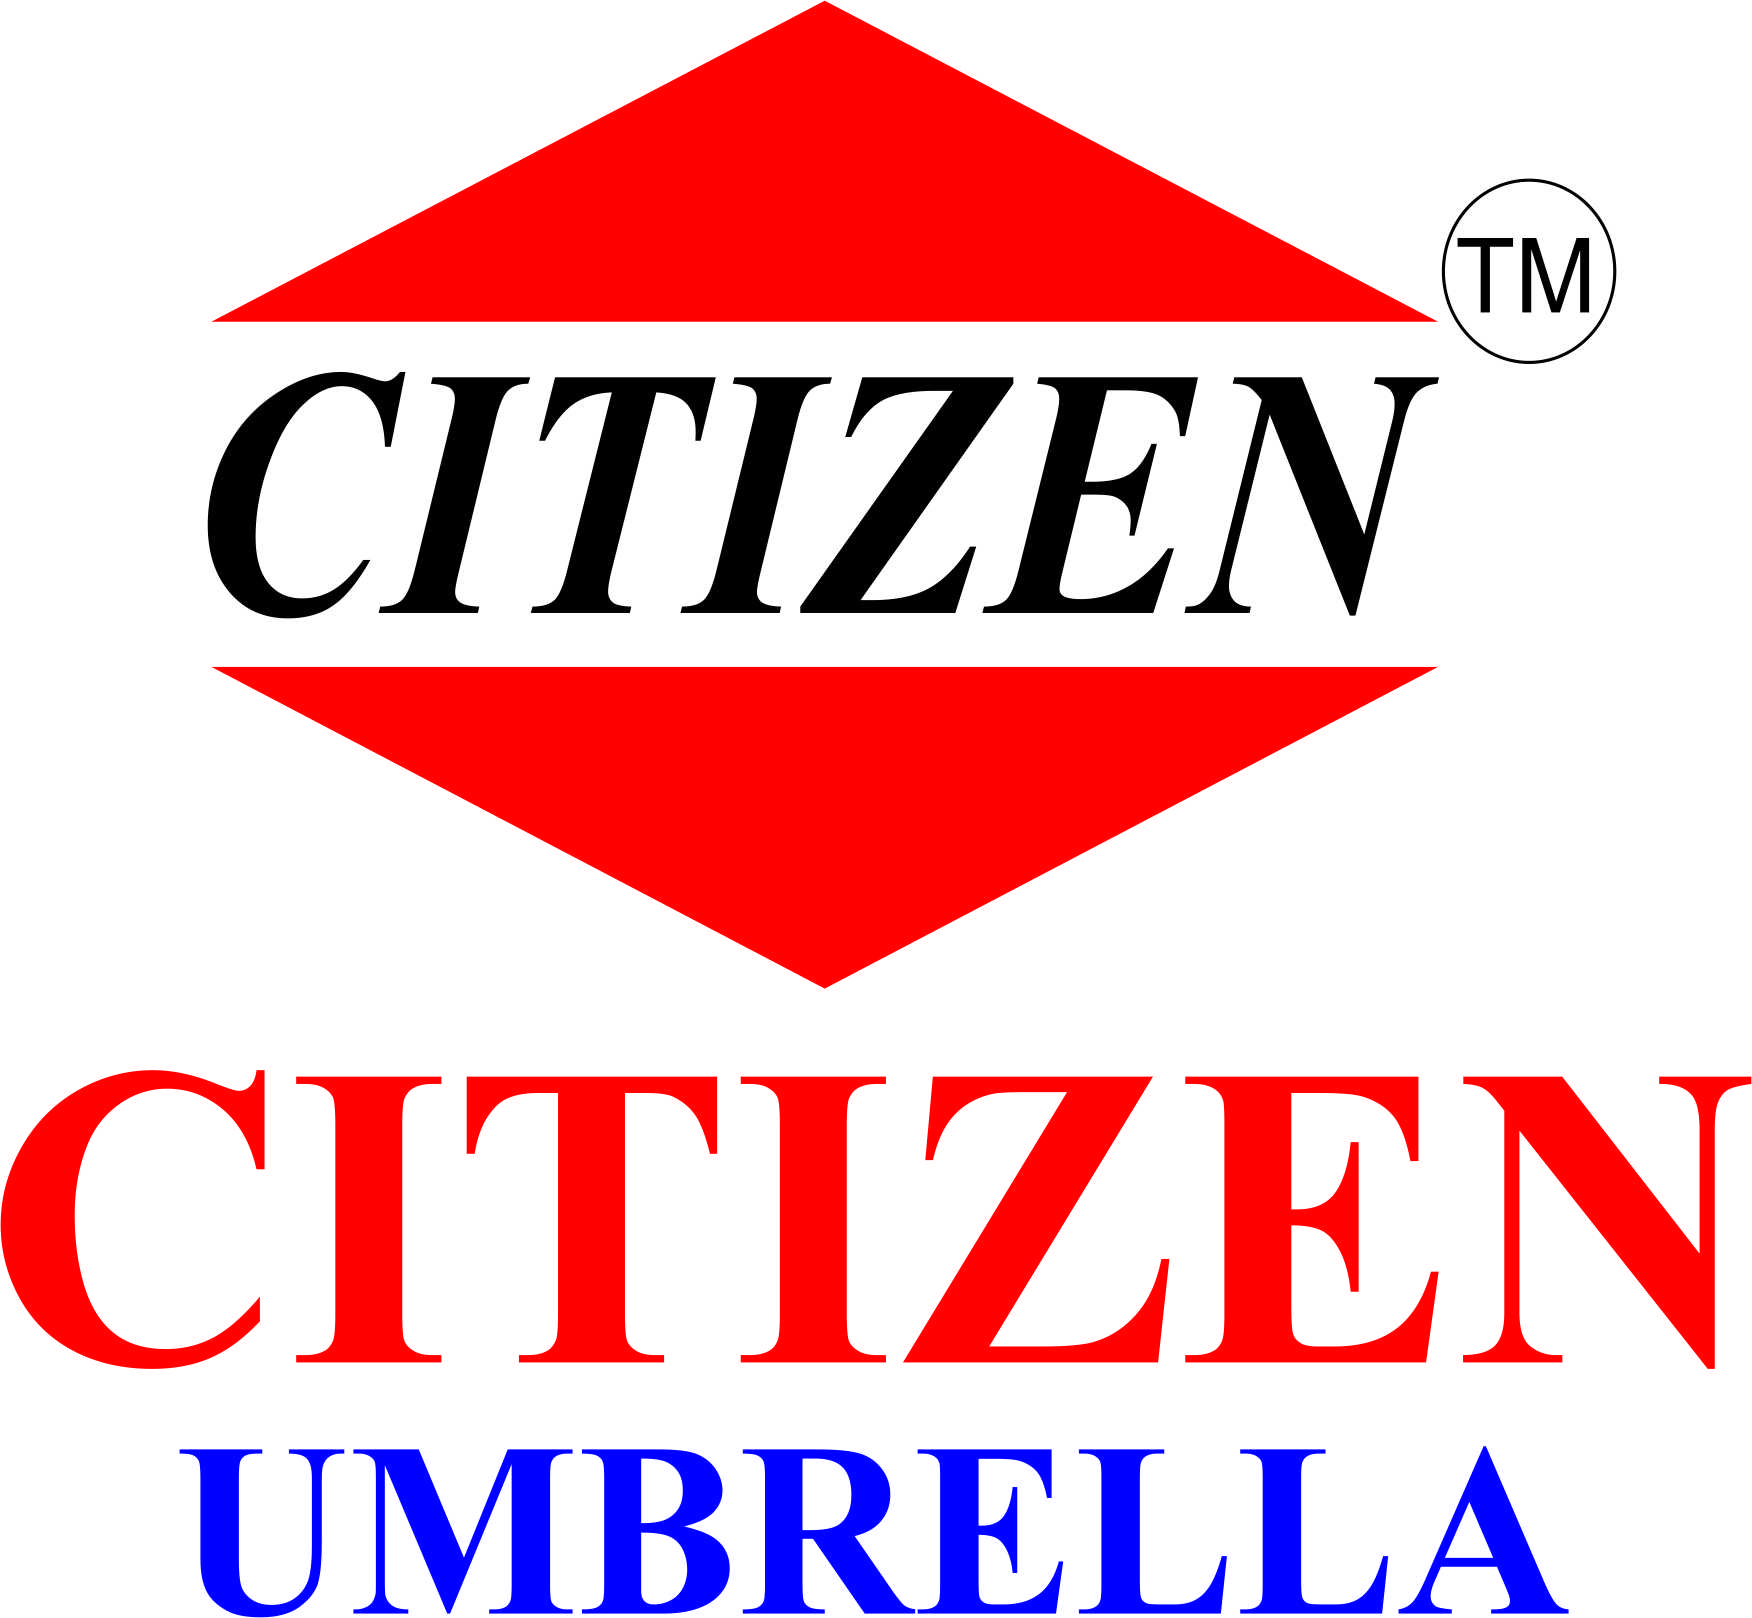 Buy Umbrellas online in Mumbai India